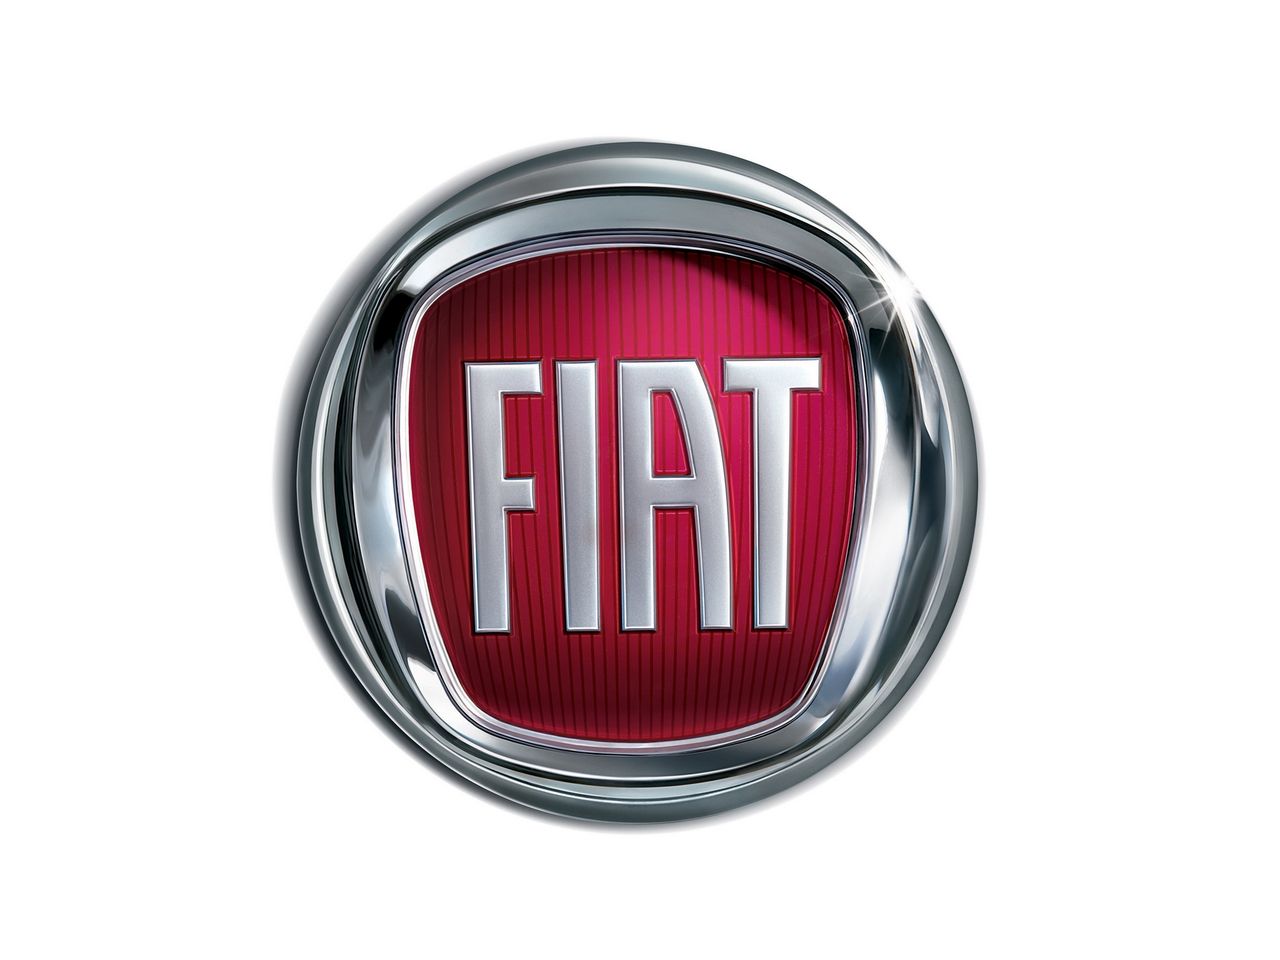 Jednak najczęściej oglądamy zupełnie inne dzieło z portfolio Janusza Kaniewskiego. Jest on twórcą aktualnego okrągłego logo Fiata.